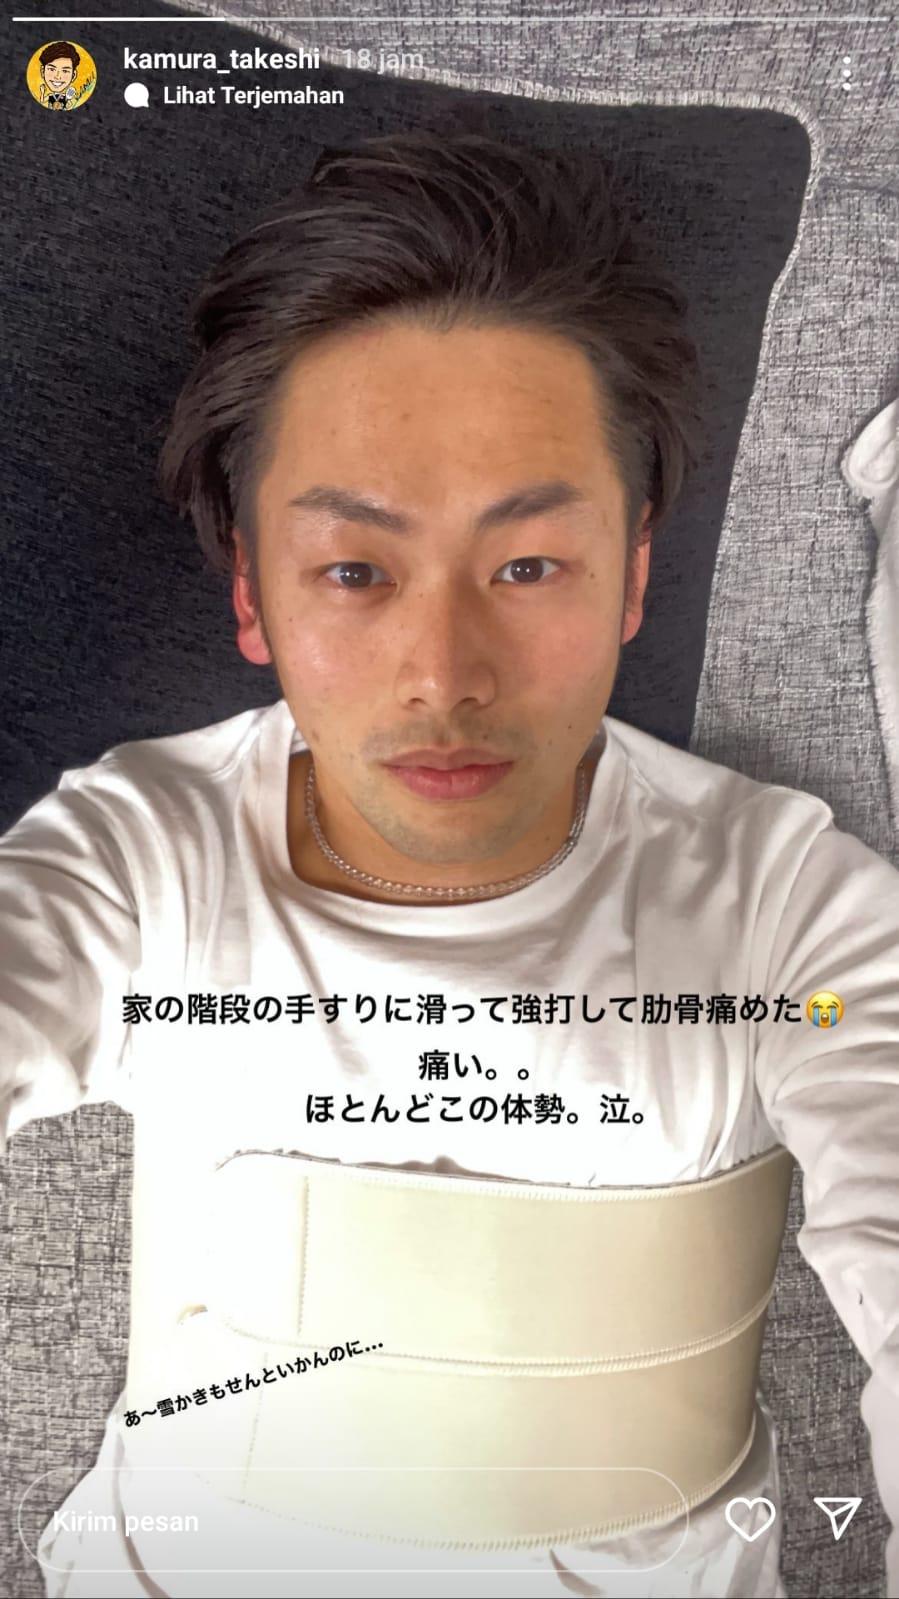 Takeshi Kamura alami cedera usai kecelakaan Copyright: Instagram/@kamura_takeshi